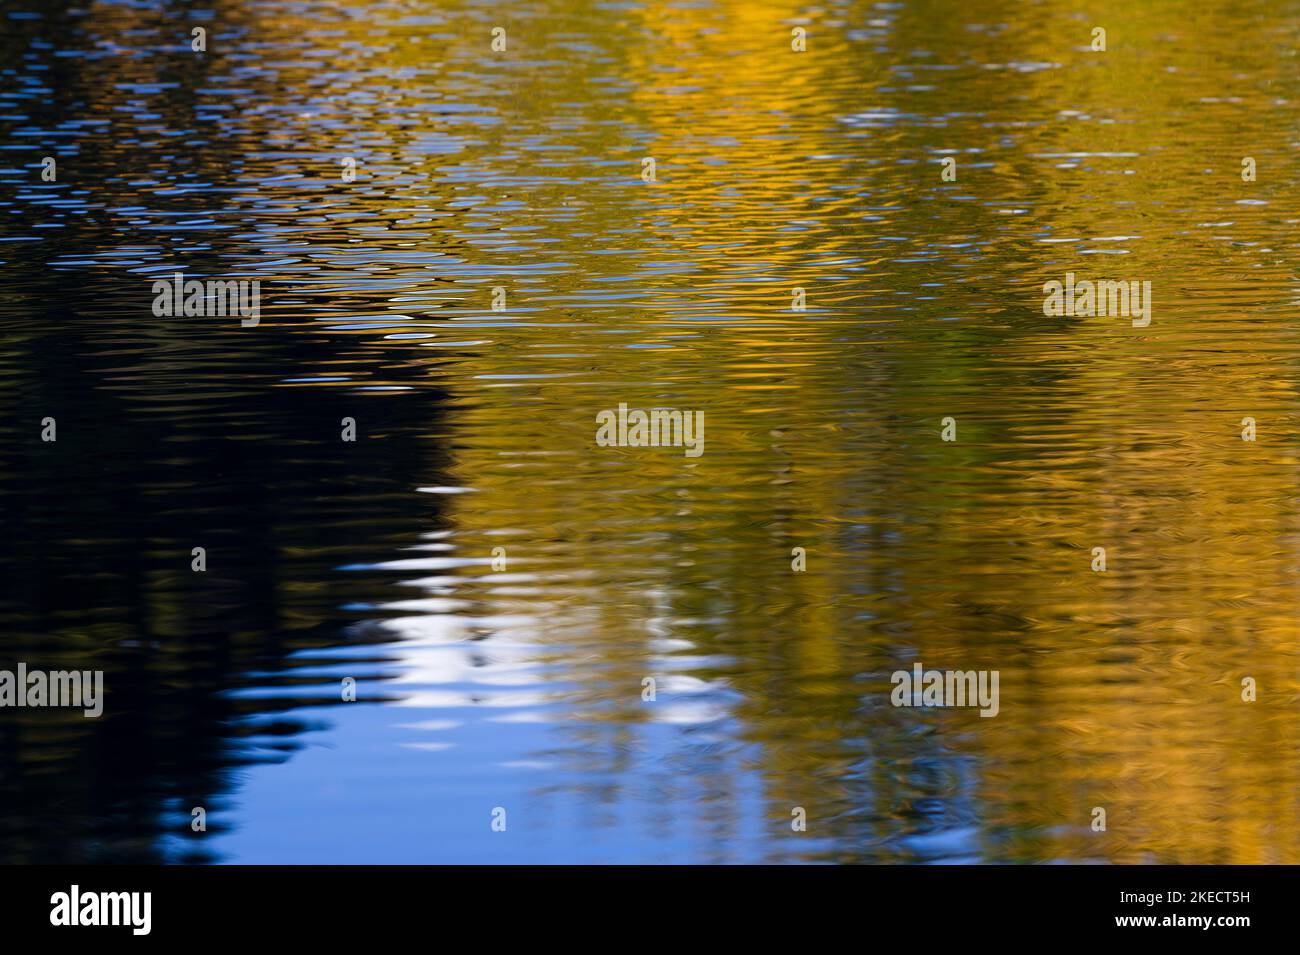 Feuilles d'automne jaunes et ciel bleu reflétés dans le lac, Tourbière de Lispach près de la Bresse, France, région du Grand est, montagnes des Vosges, Parc naturel régional des ballons des Vosges Banque D'Images